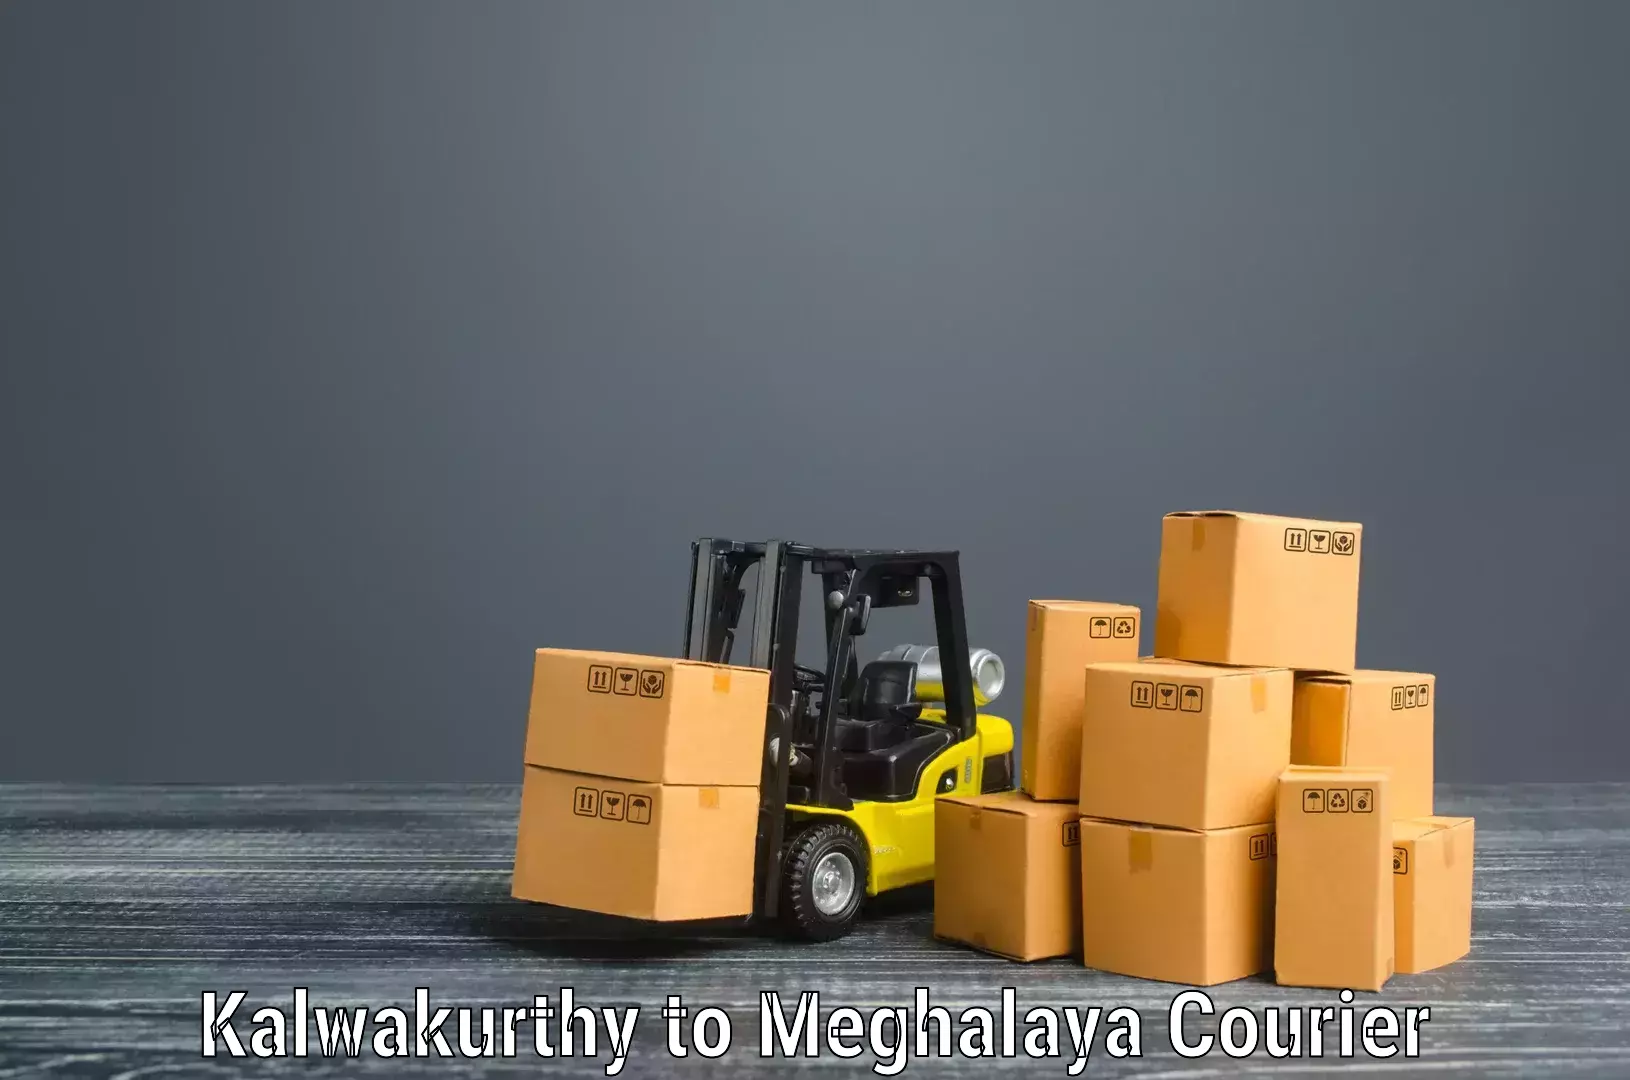 Professional furniture movers Kalwakurthy to Cherrapunji